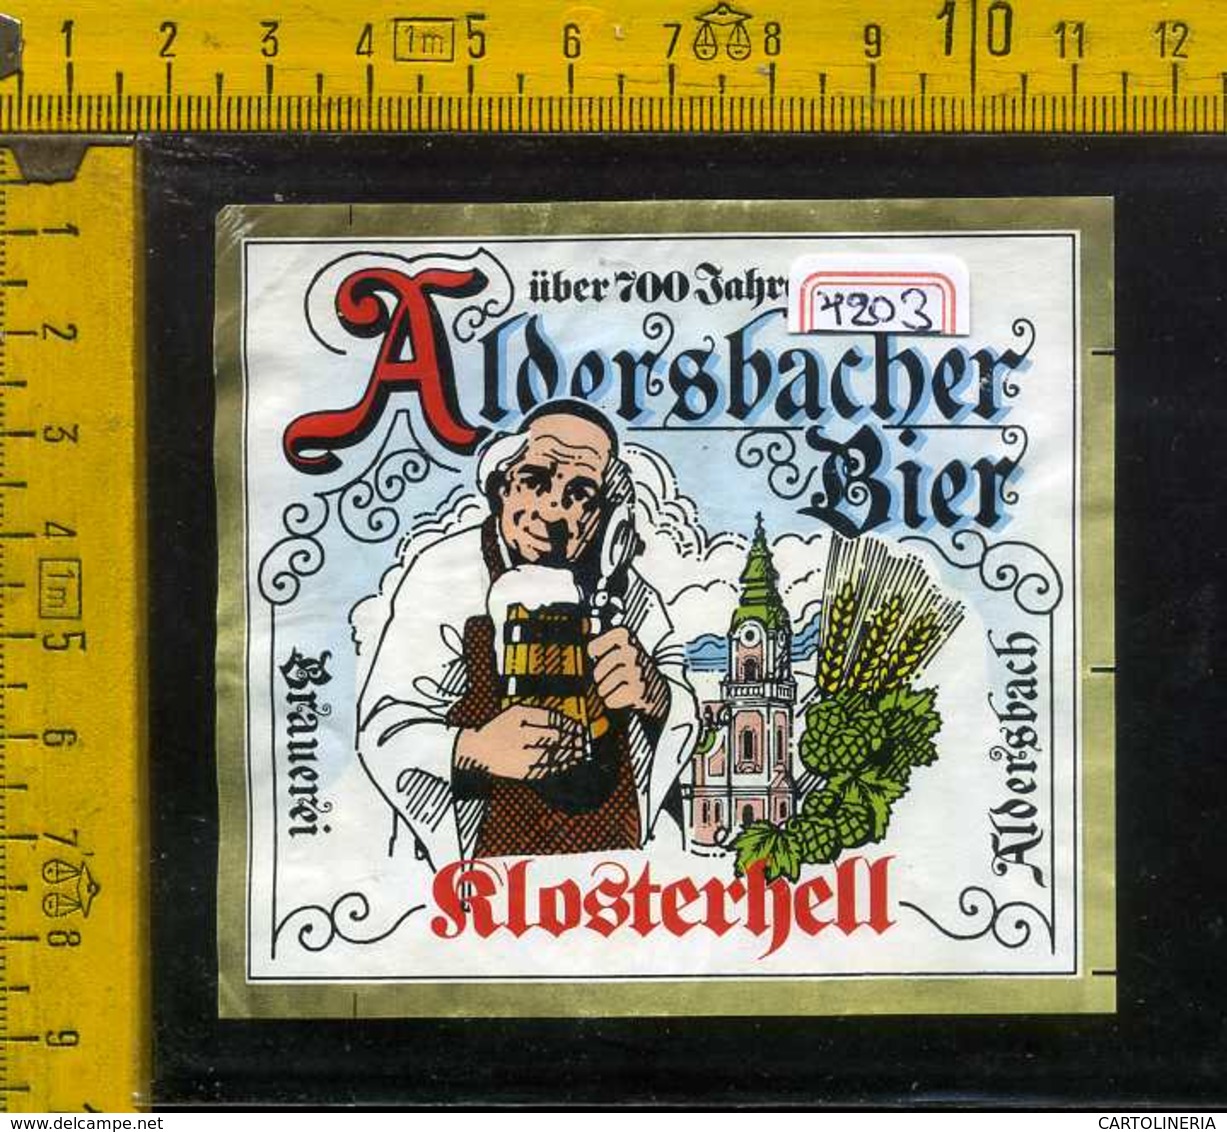 Etichetta Birra Aldersbacher Flosterhell - Germania - Birra